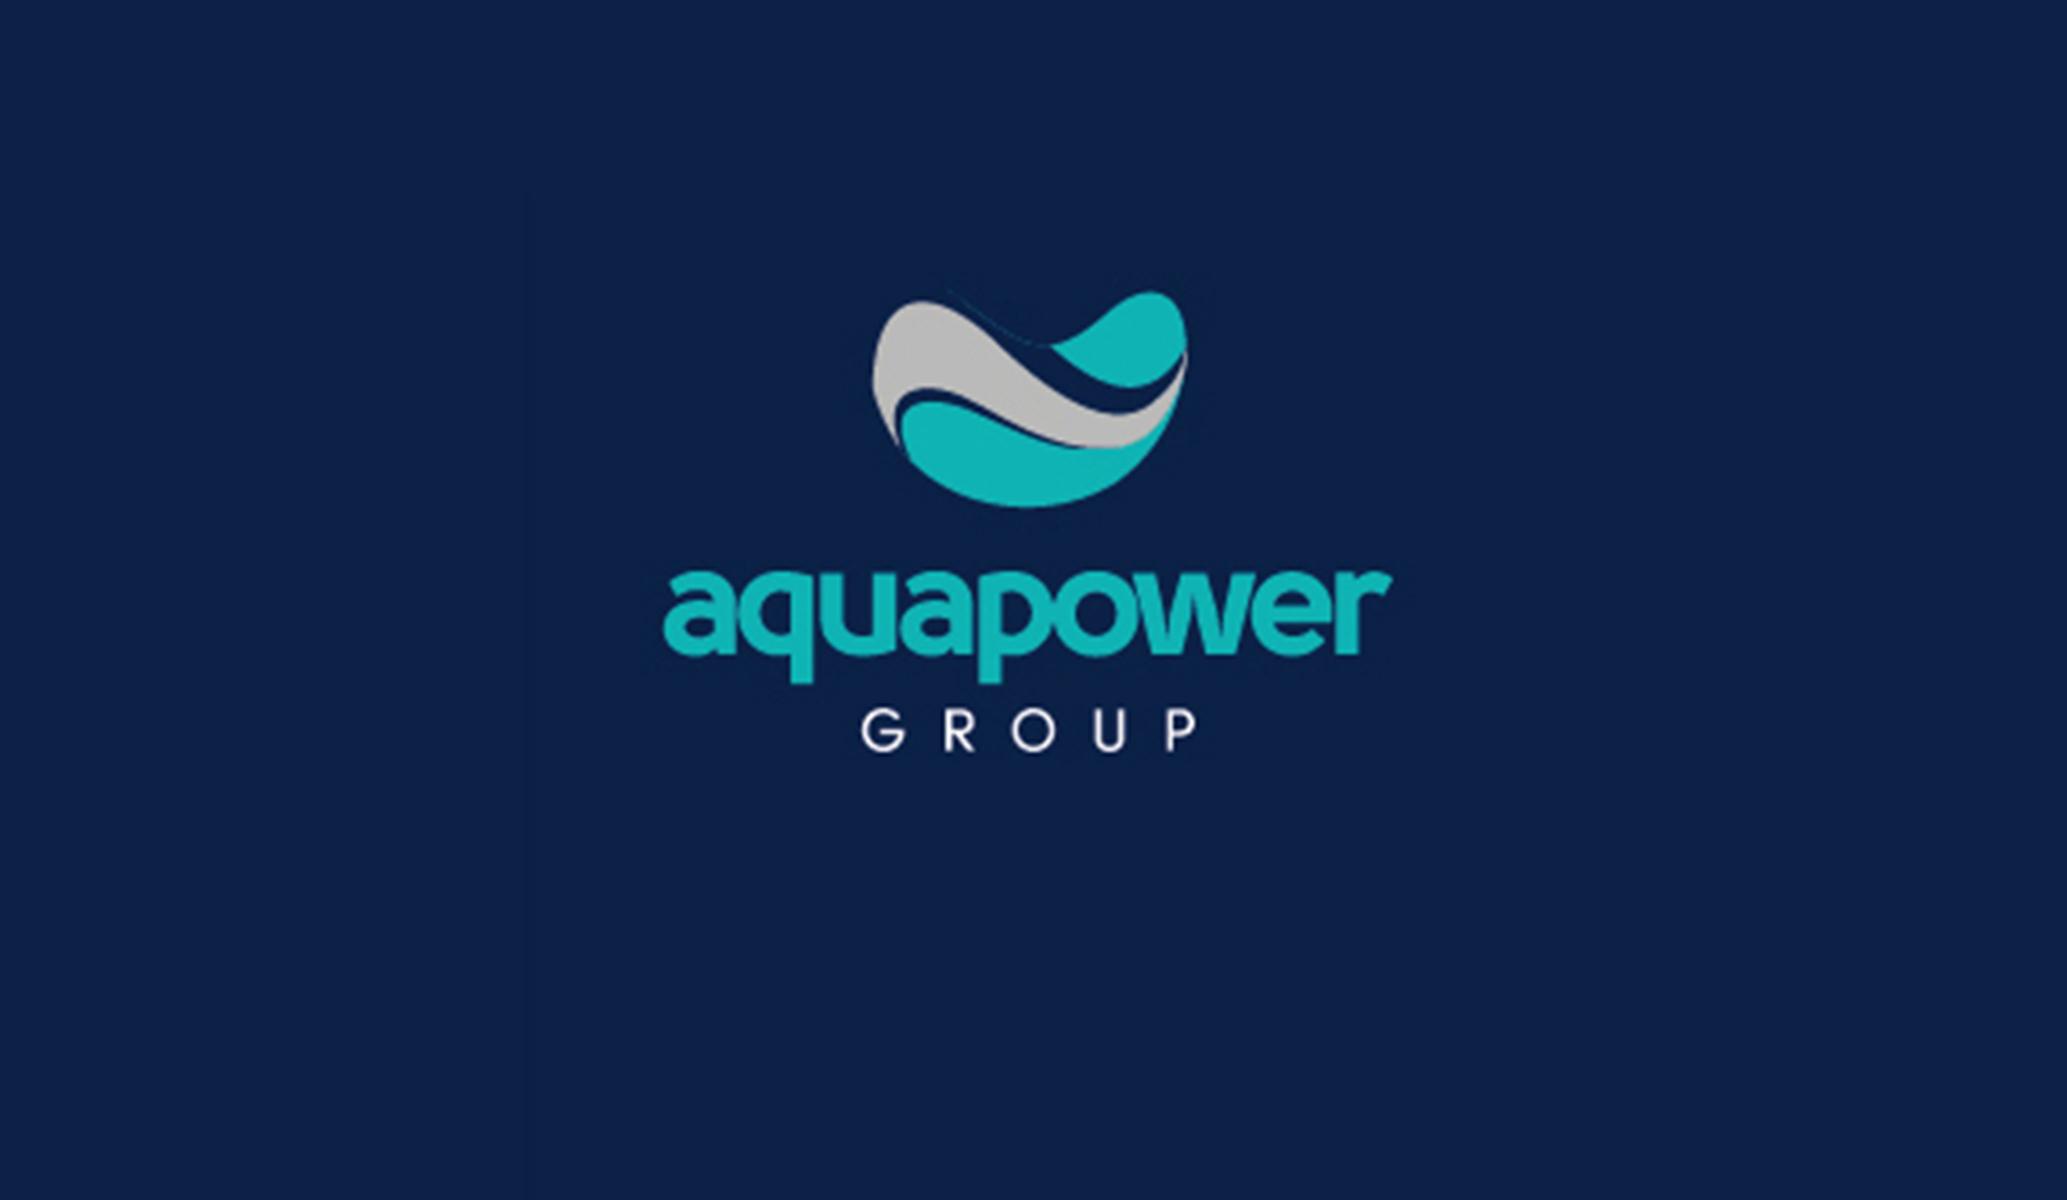 Aqua Power Group forms